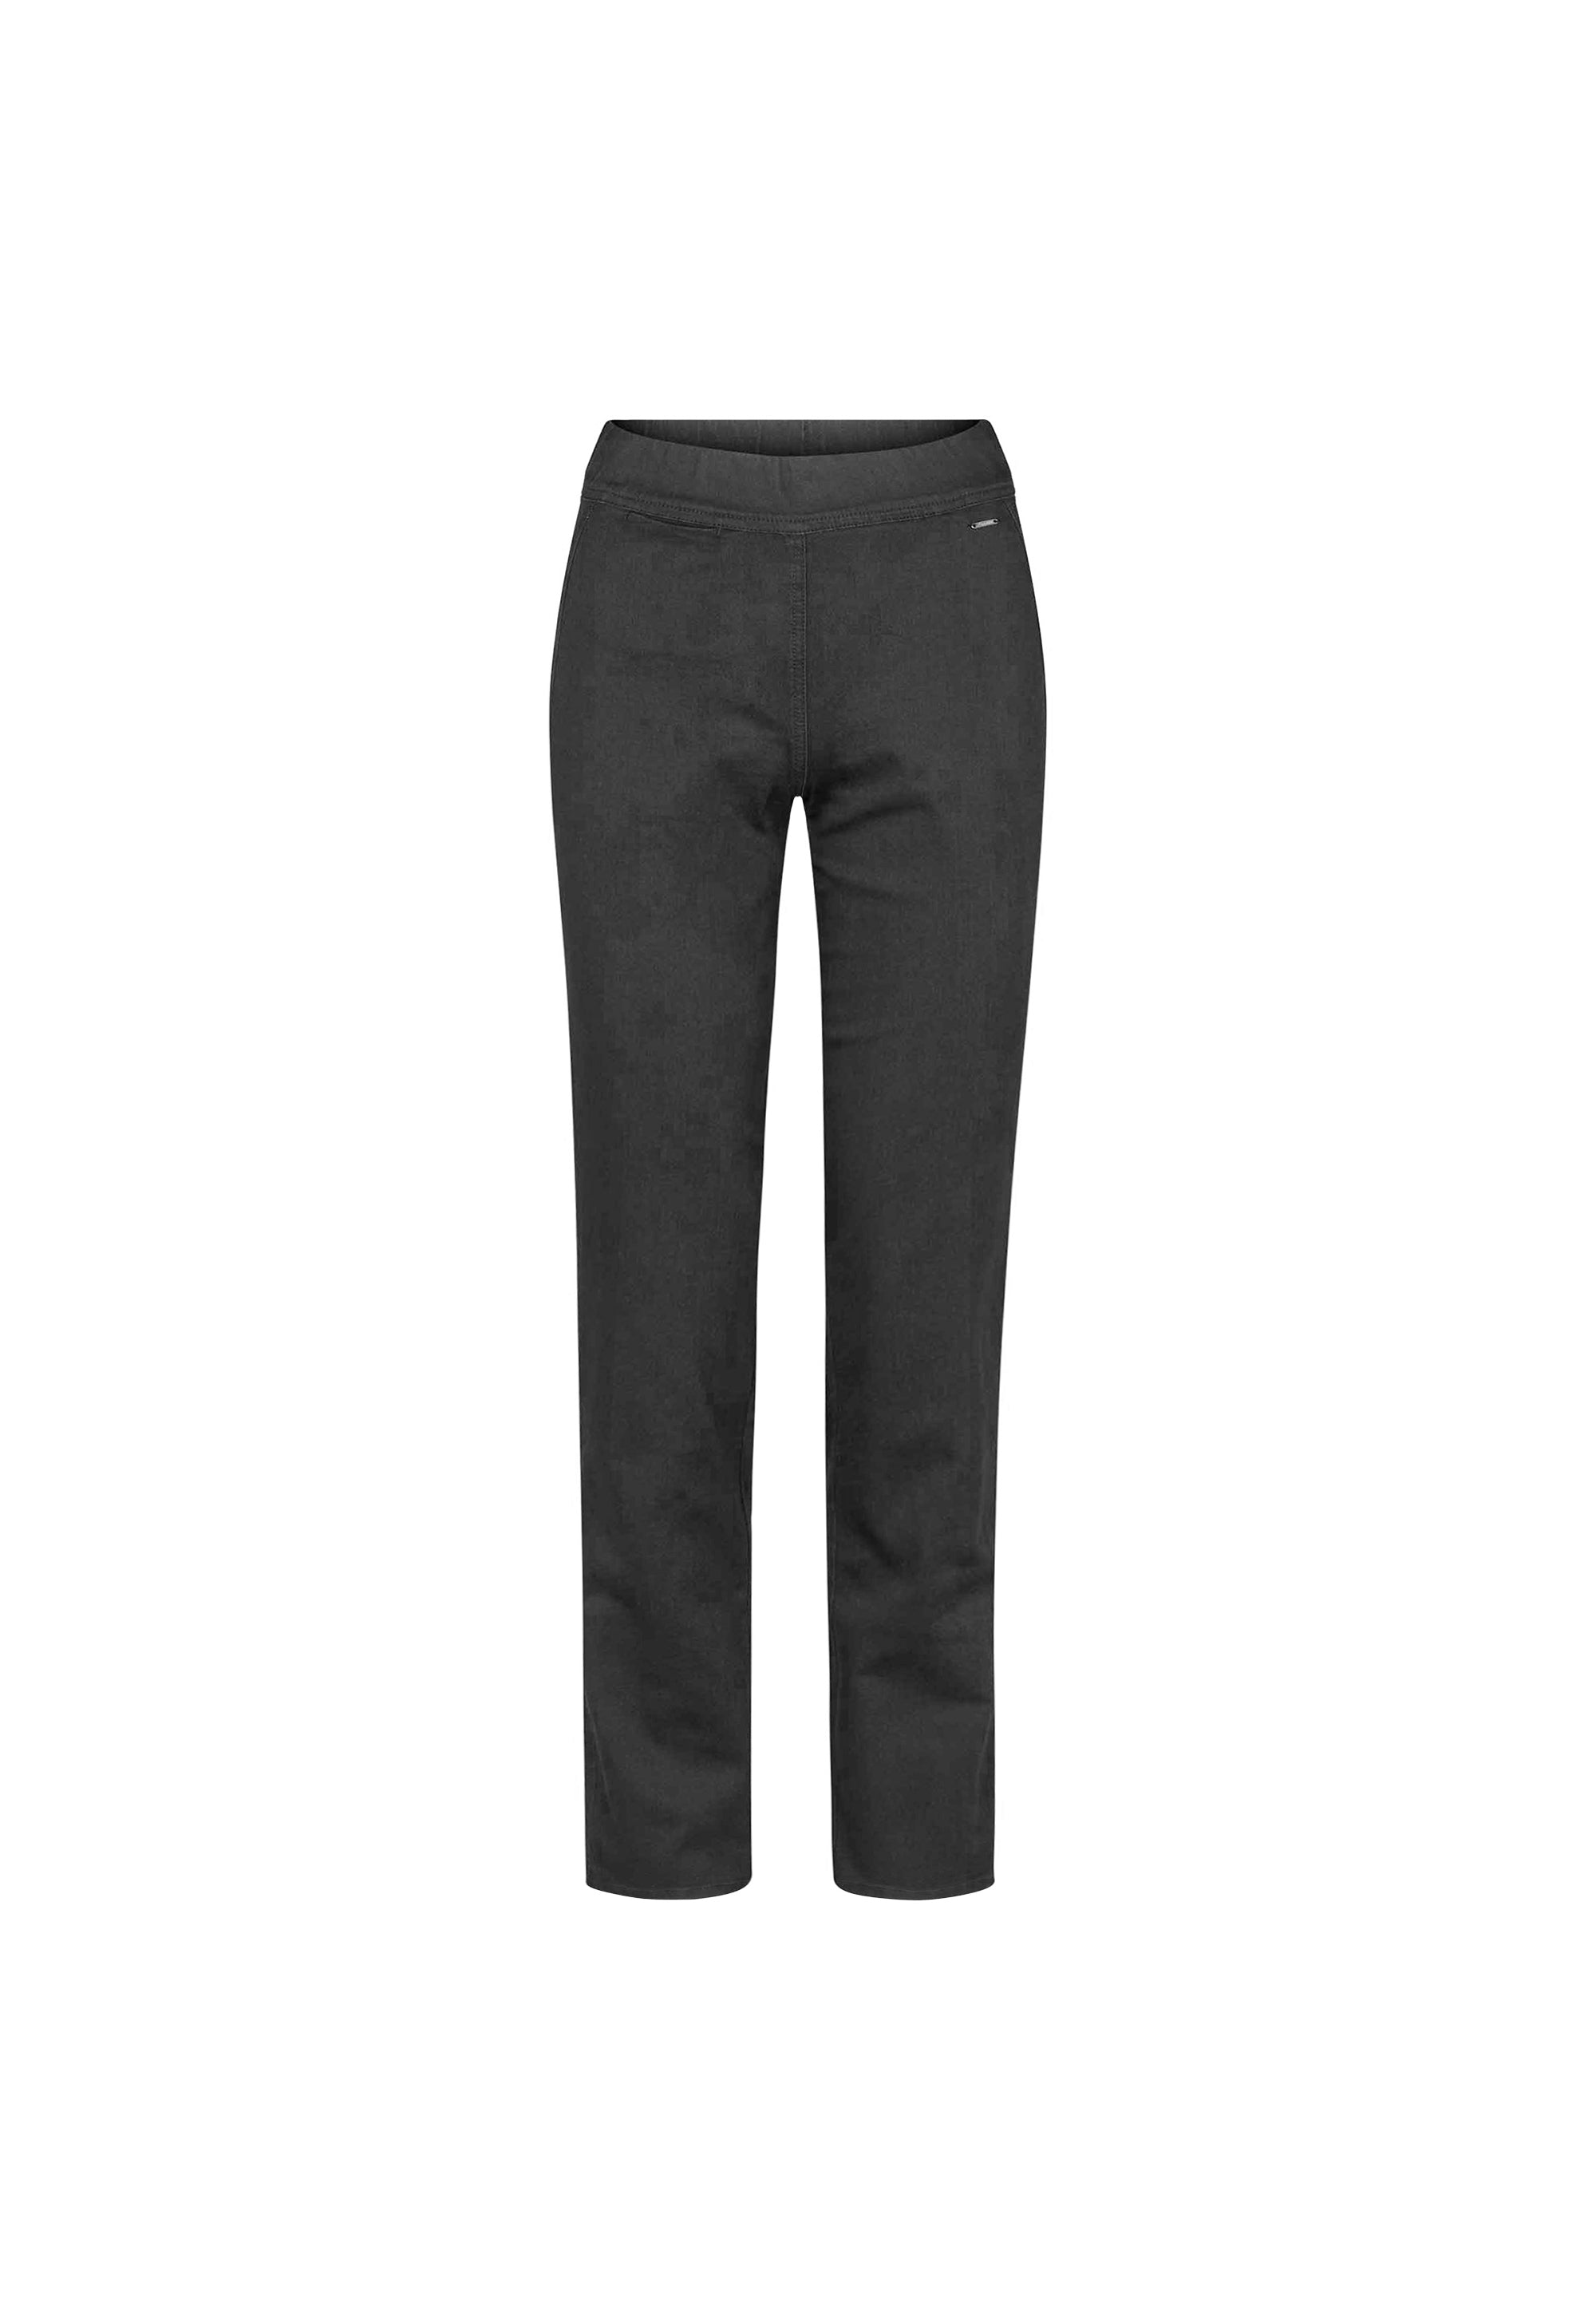 LAURIE Serene Regular - Long Length Trousers REGULAR 99000 Black